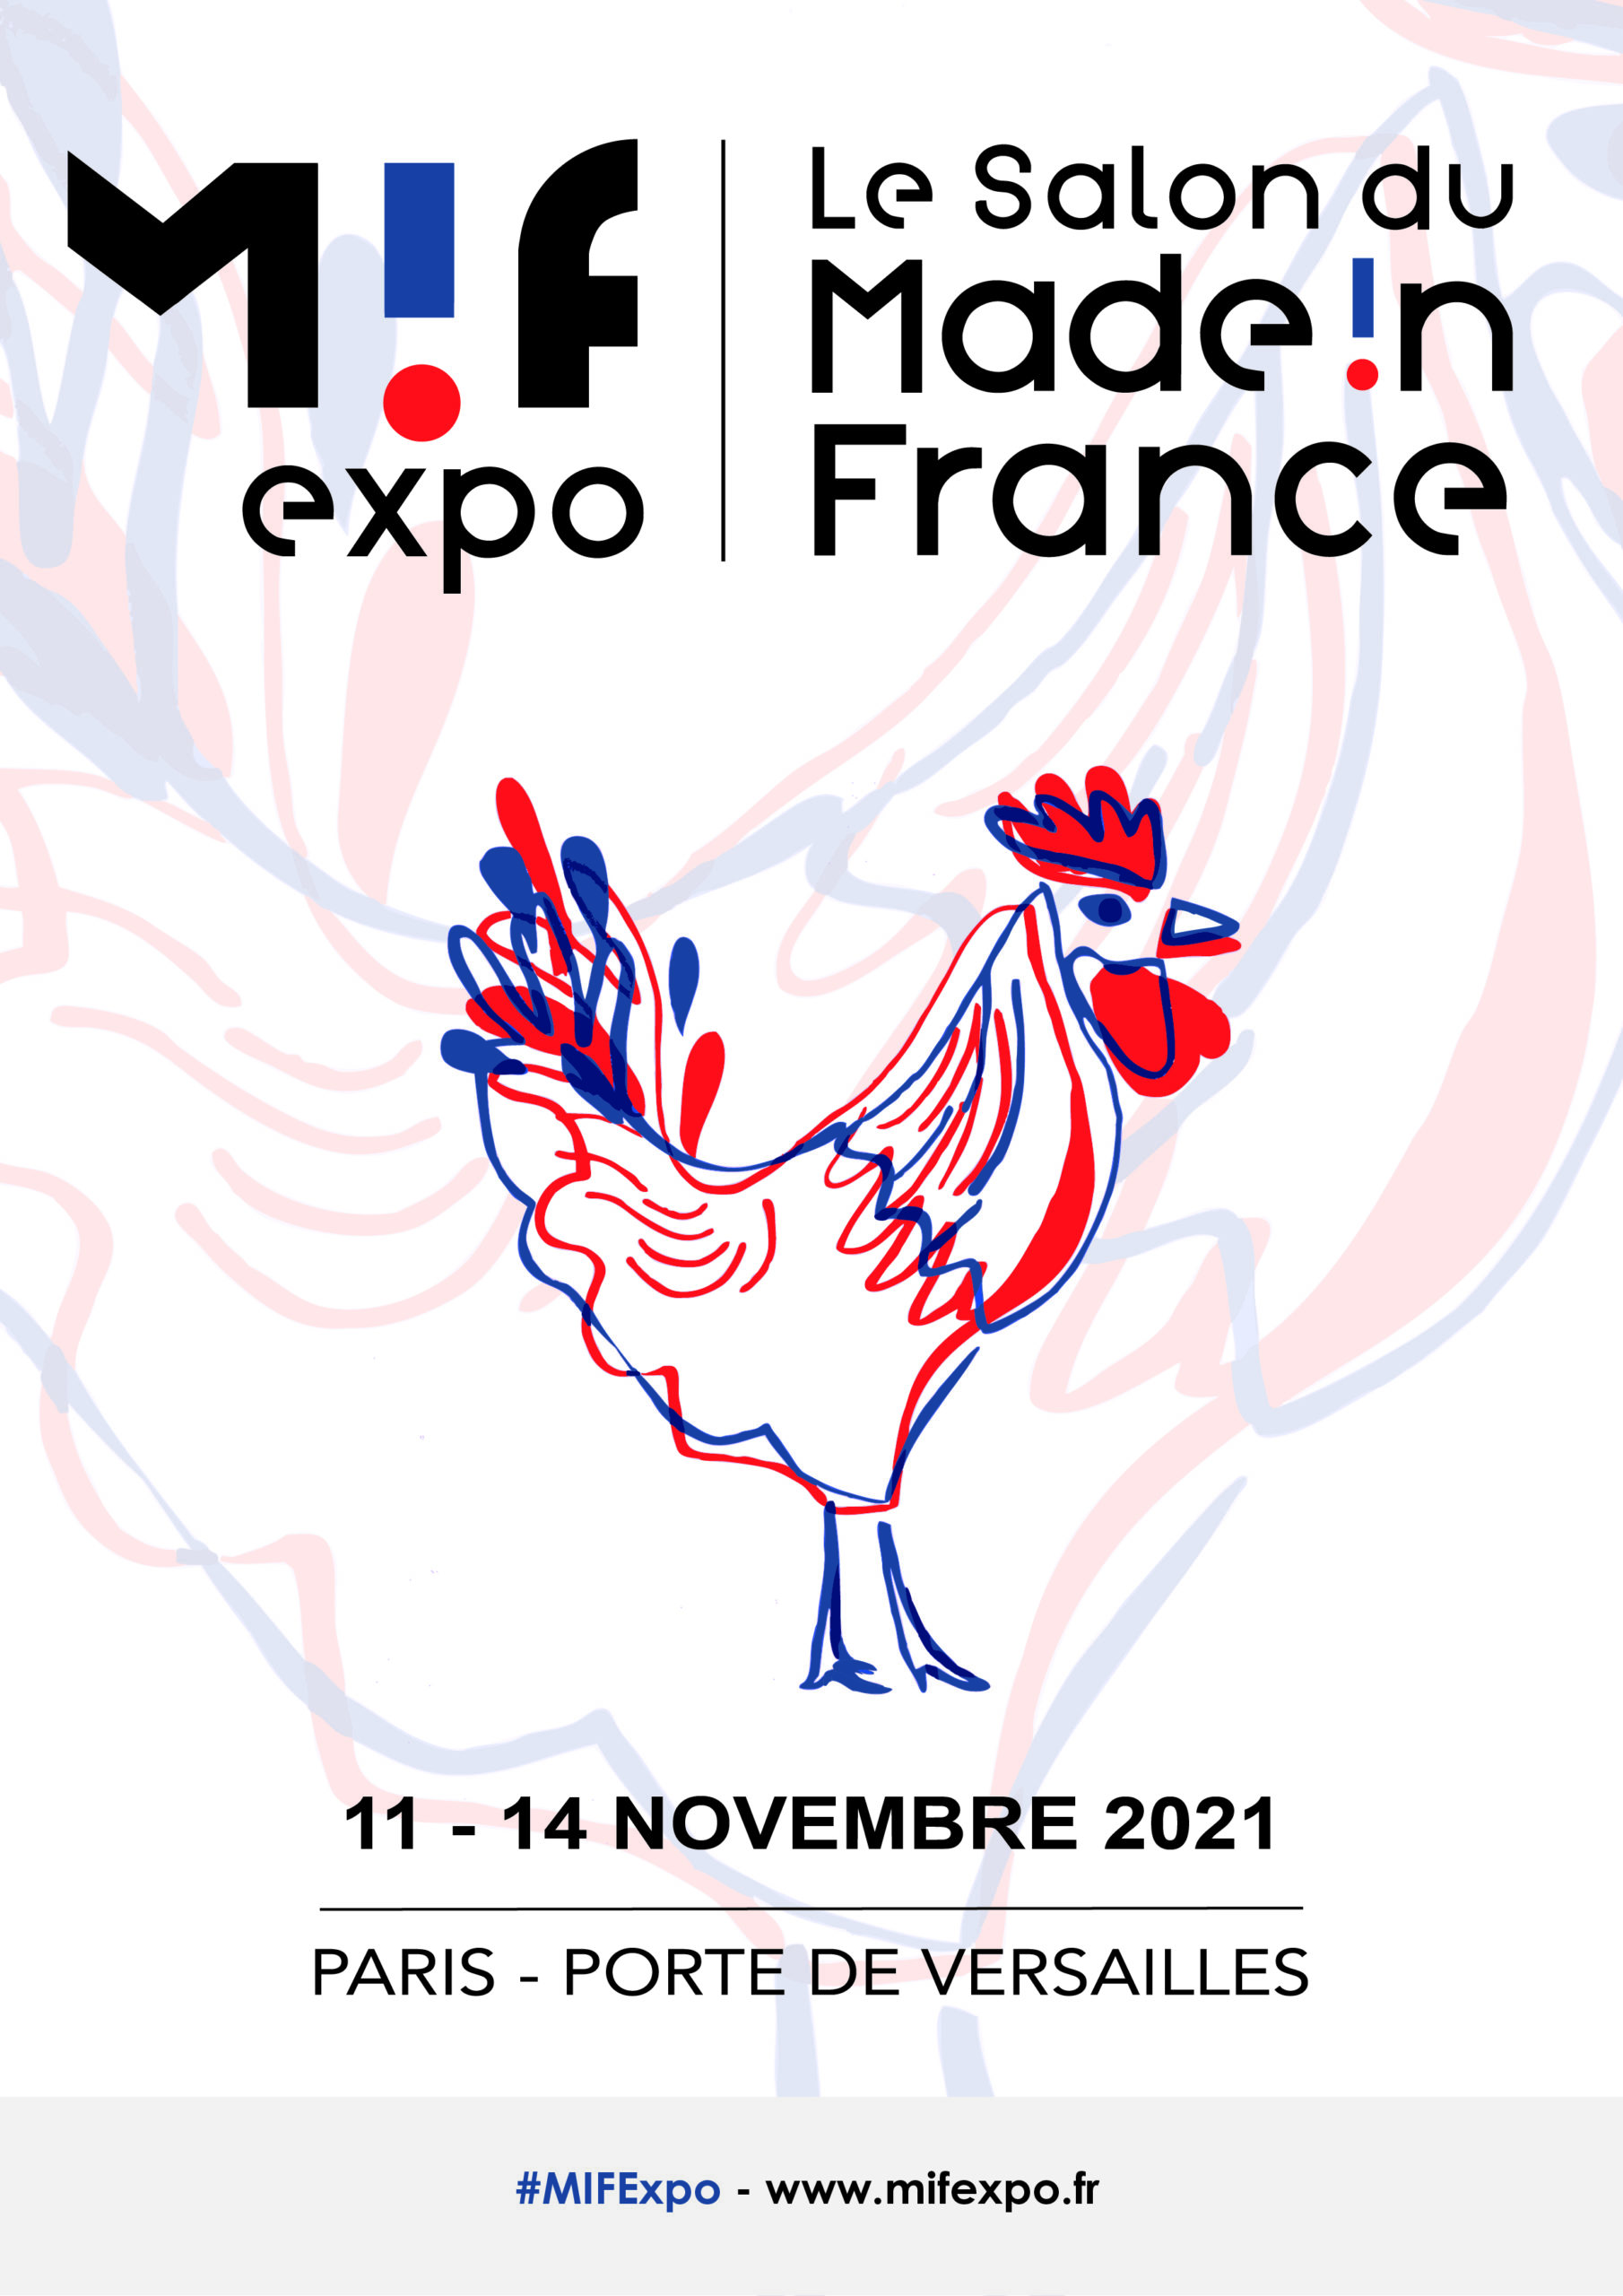 Salon du Made In France : Les artisans des Métiers de Service et Fabrication d’île-de-France seront présents